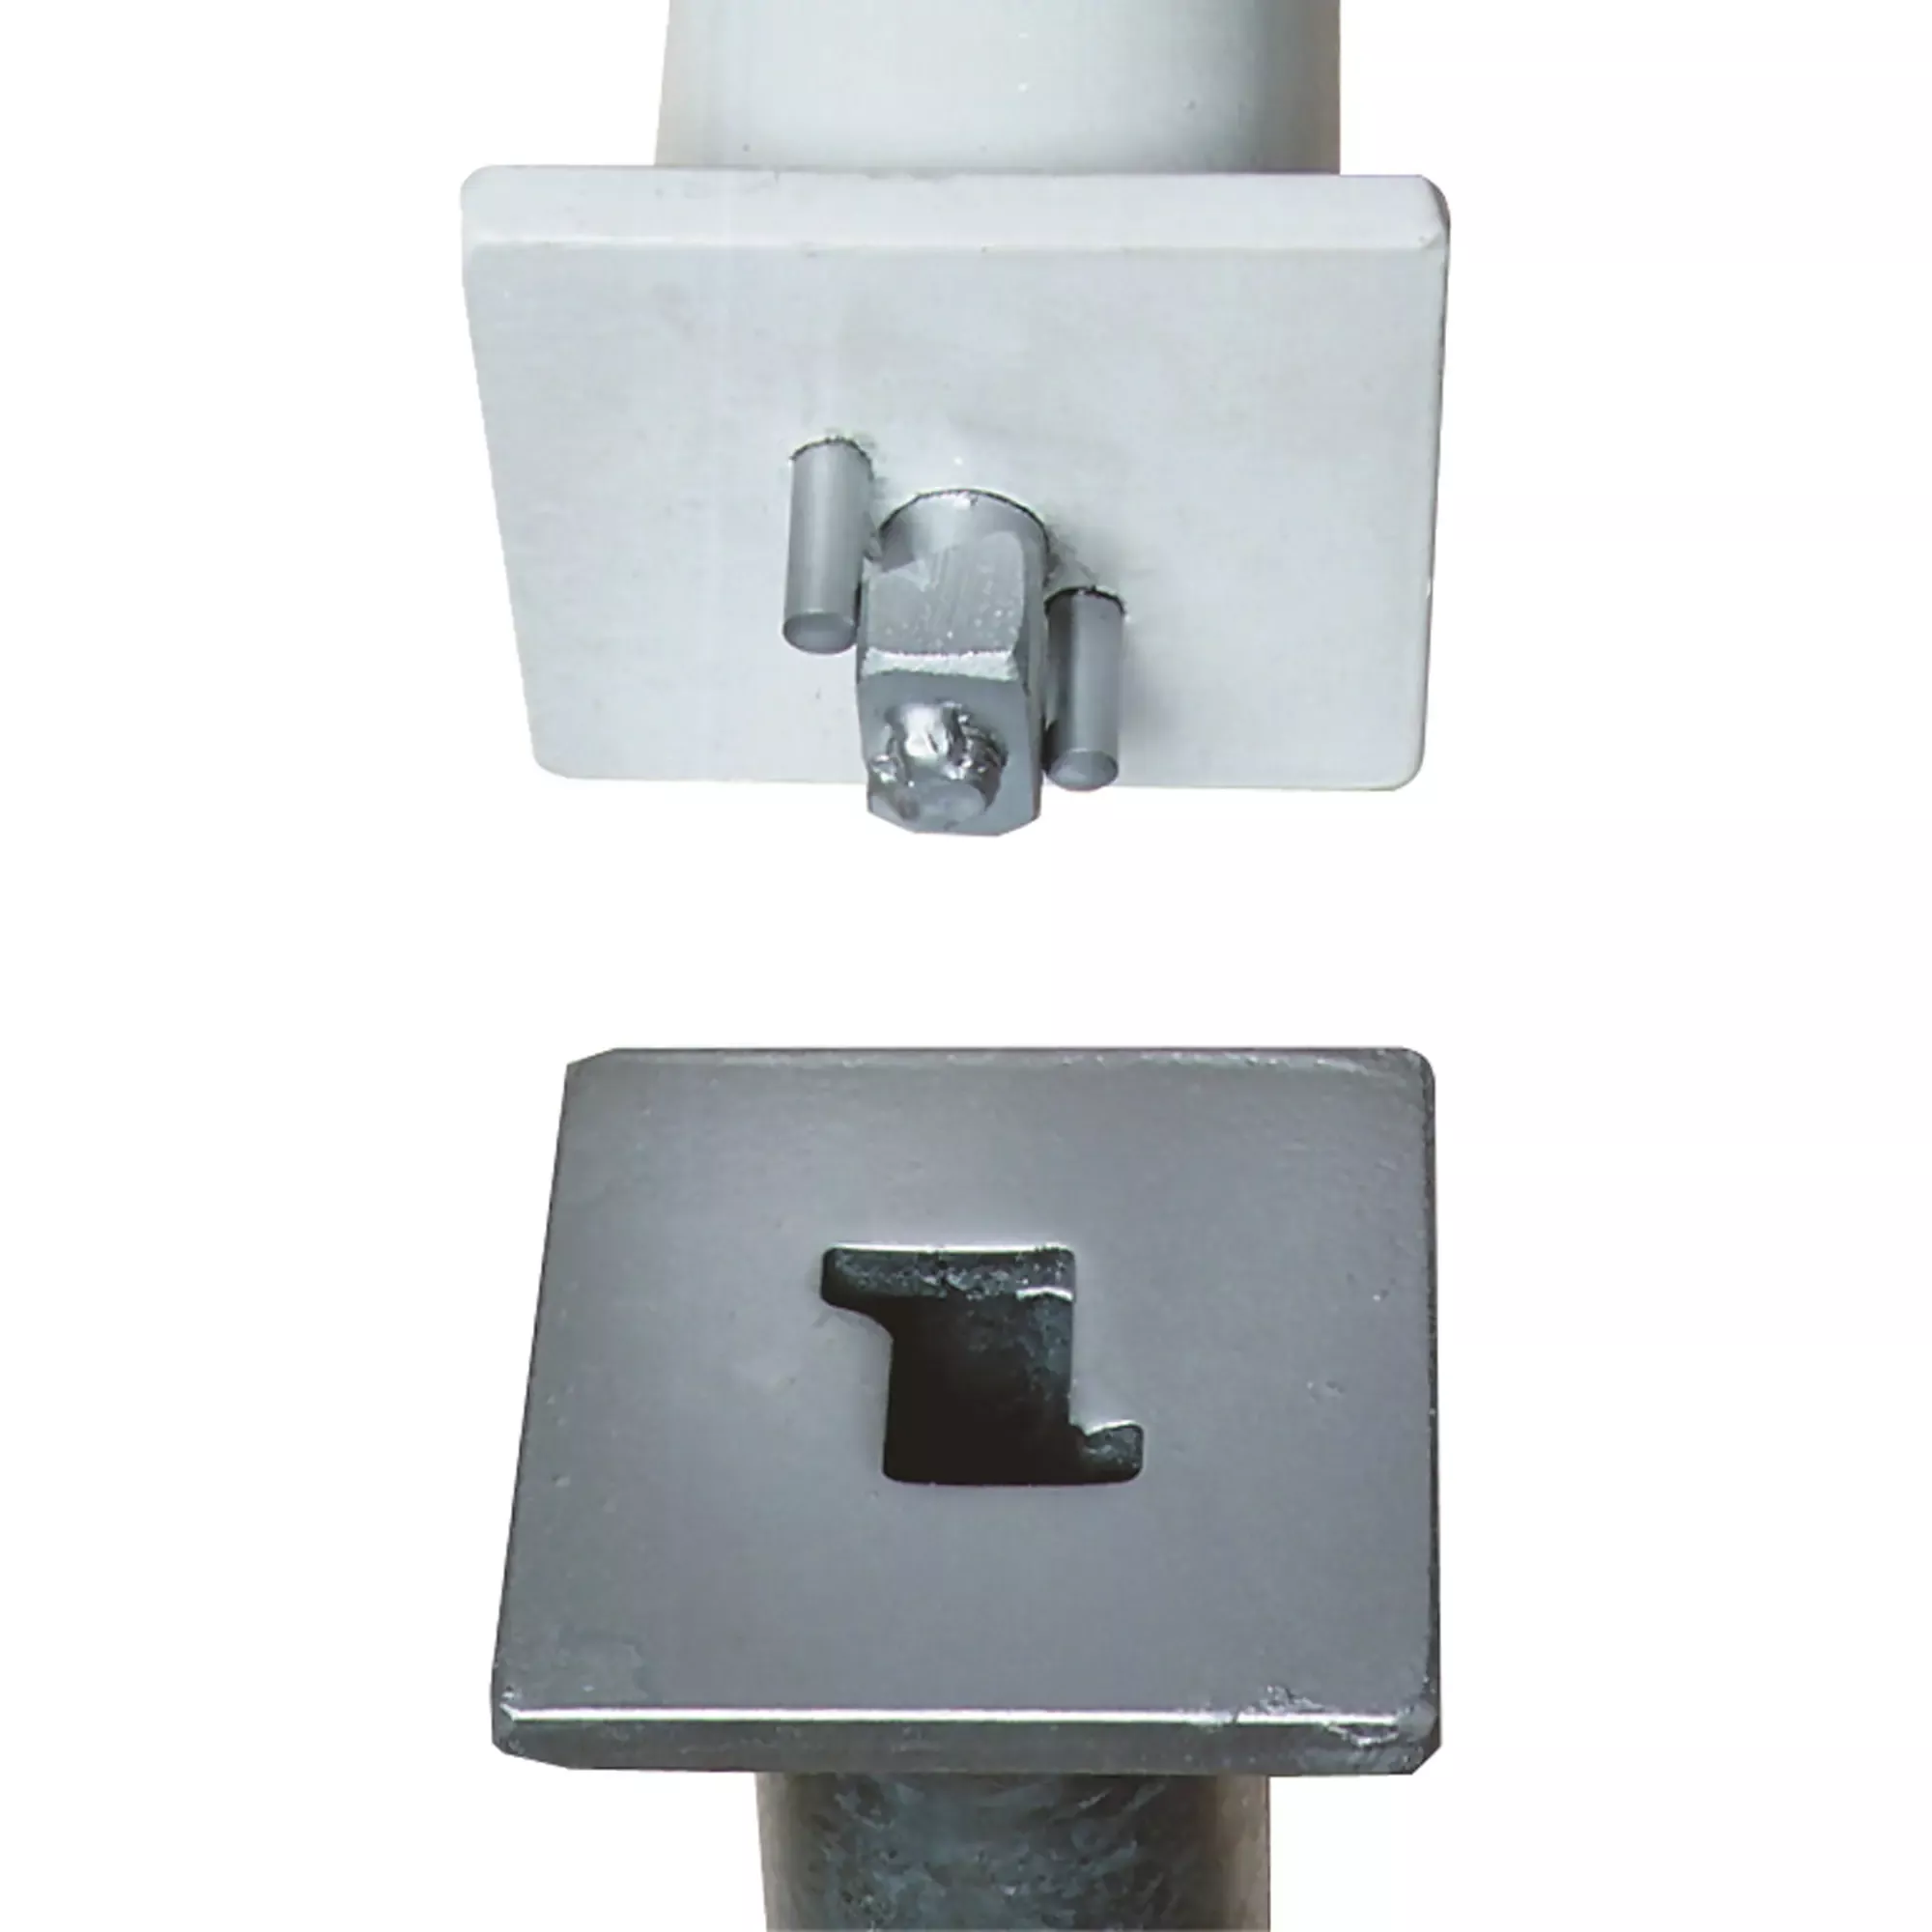 Sperrpfosten Parat B, Ø 60 x 1330 mm, aus Stahl, grau, feuerverzinkt, herausnehmbar mit Dreikantverschluss nach DIN 3223, zum Einbetonieren, ohne Ösen